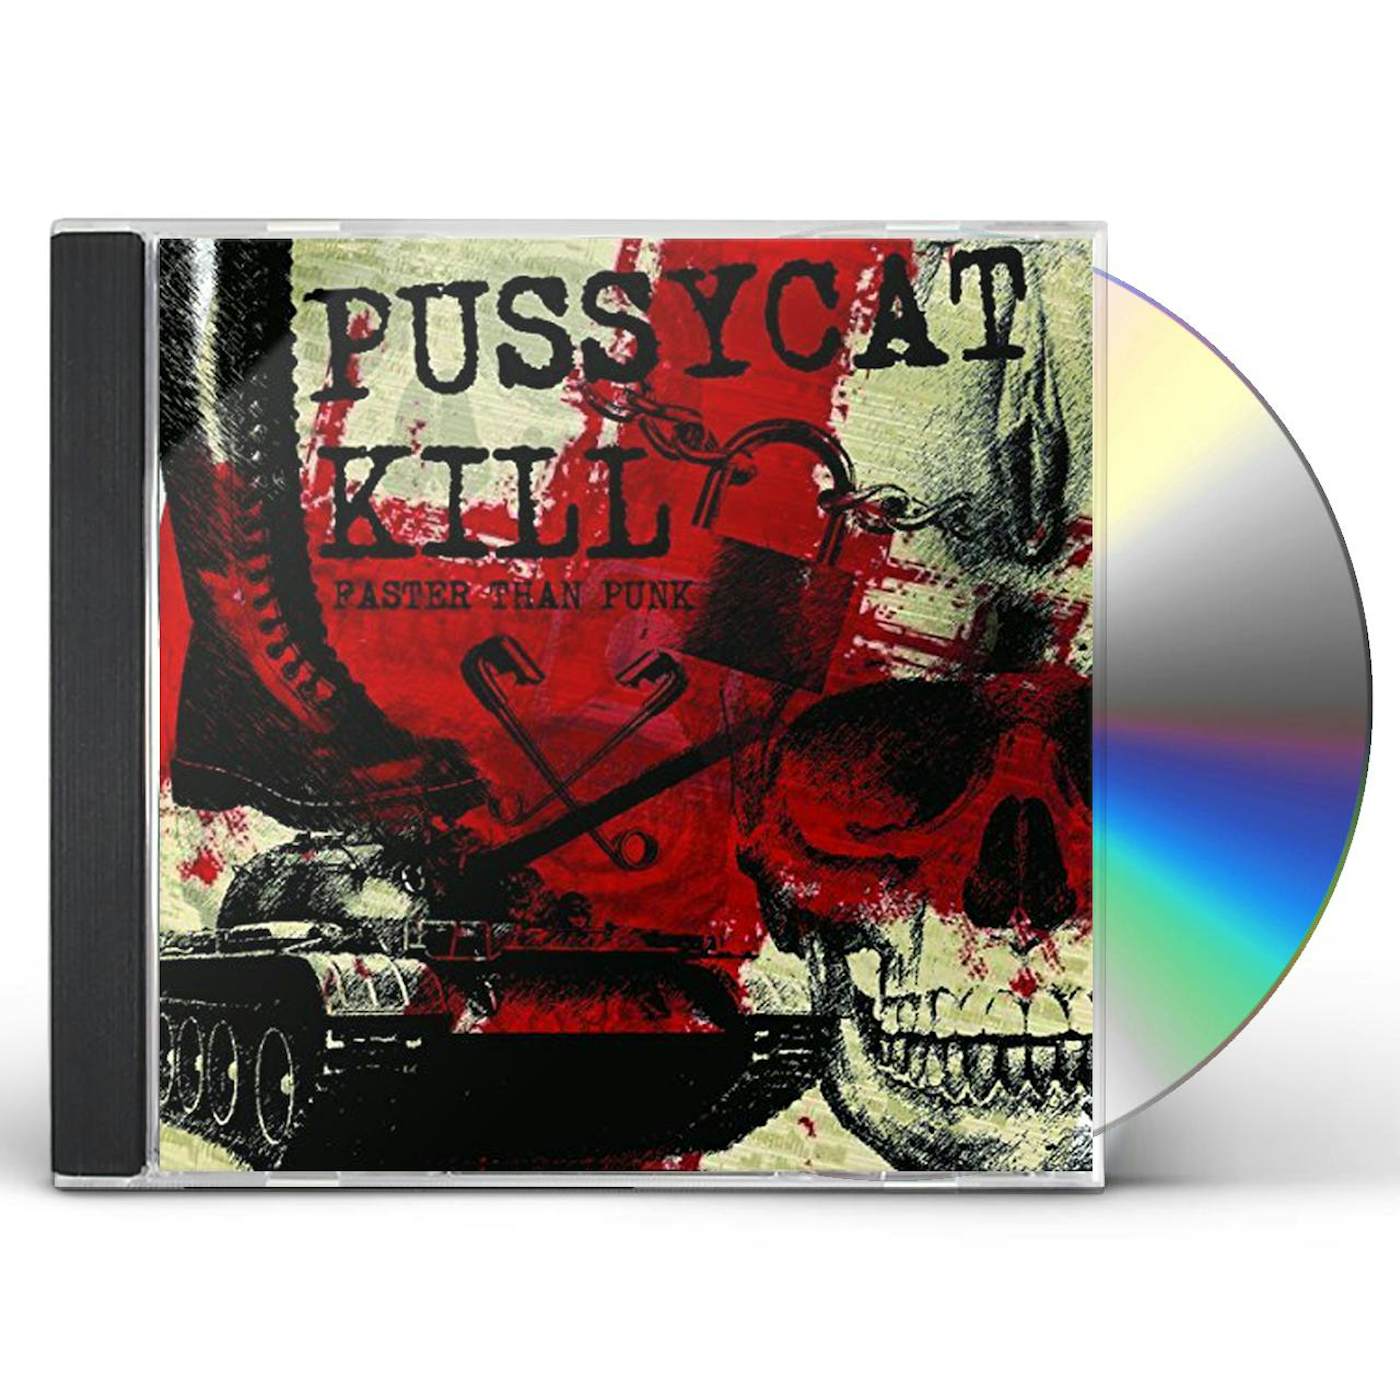 Pussycat Kill FASTER THAN PUNK CD